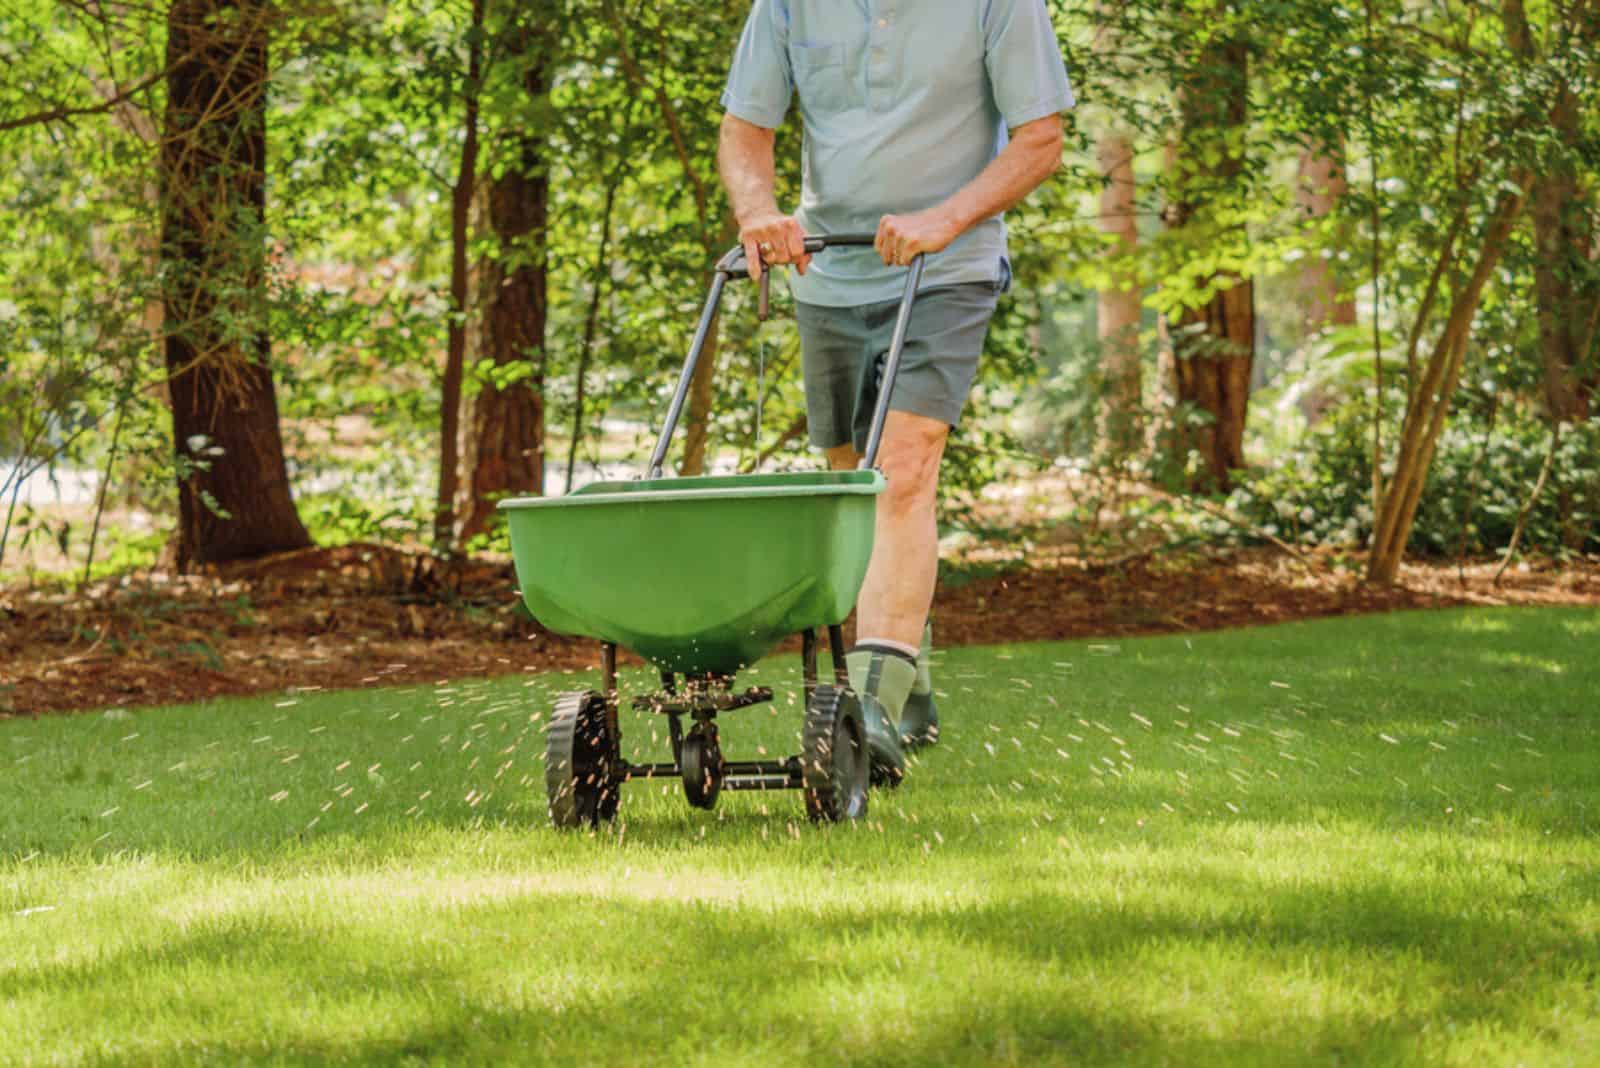 Man fertilizing and seeding residential backyard lawn